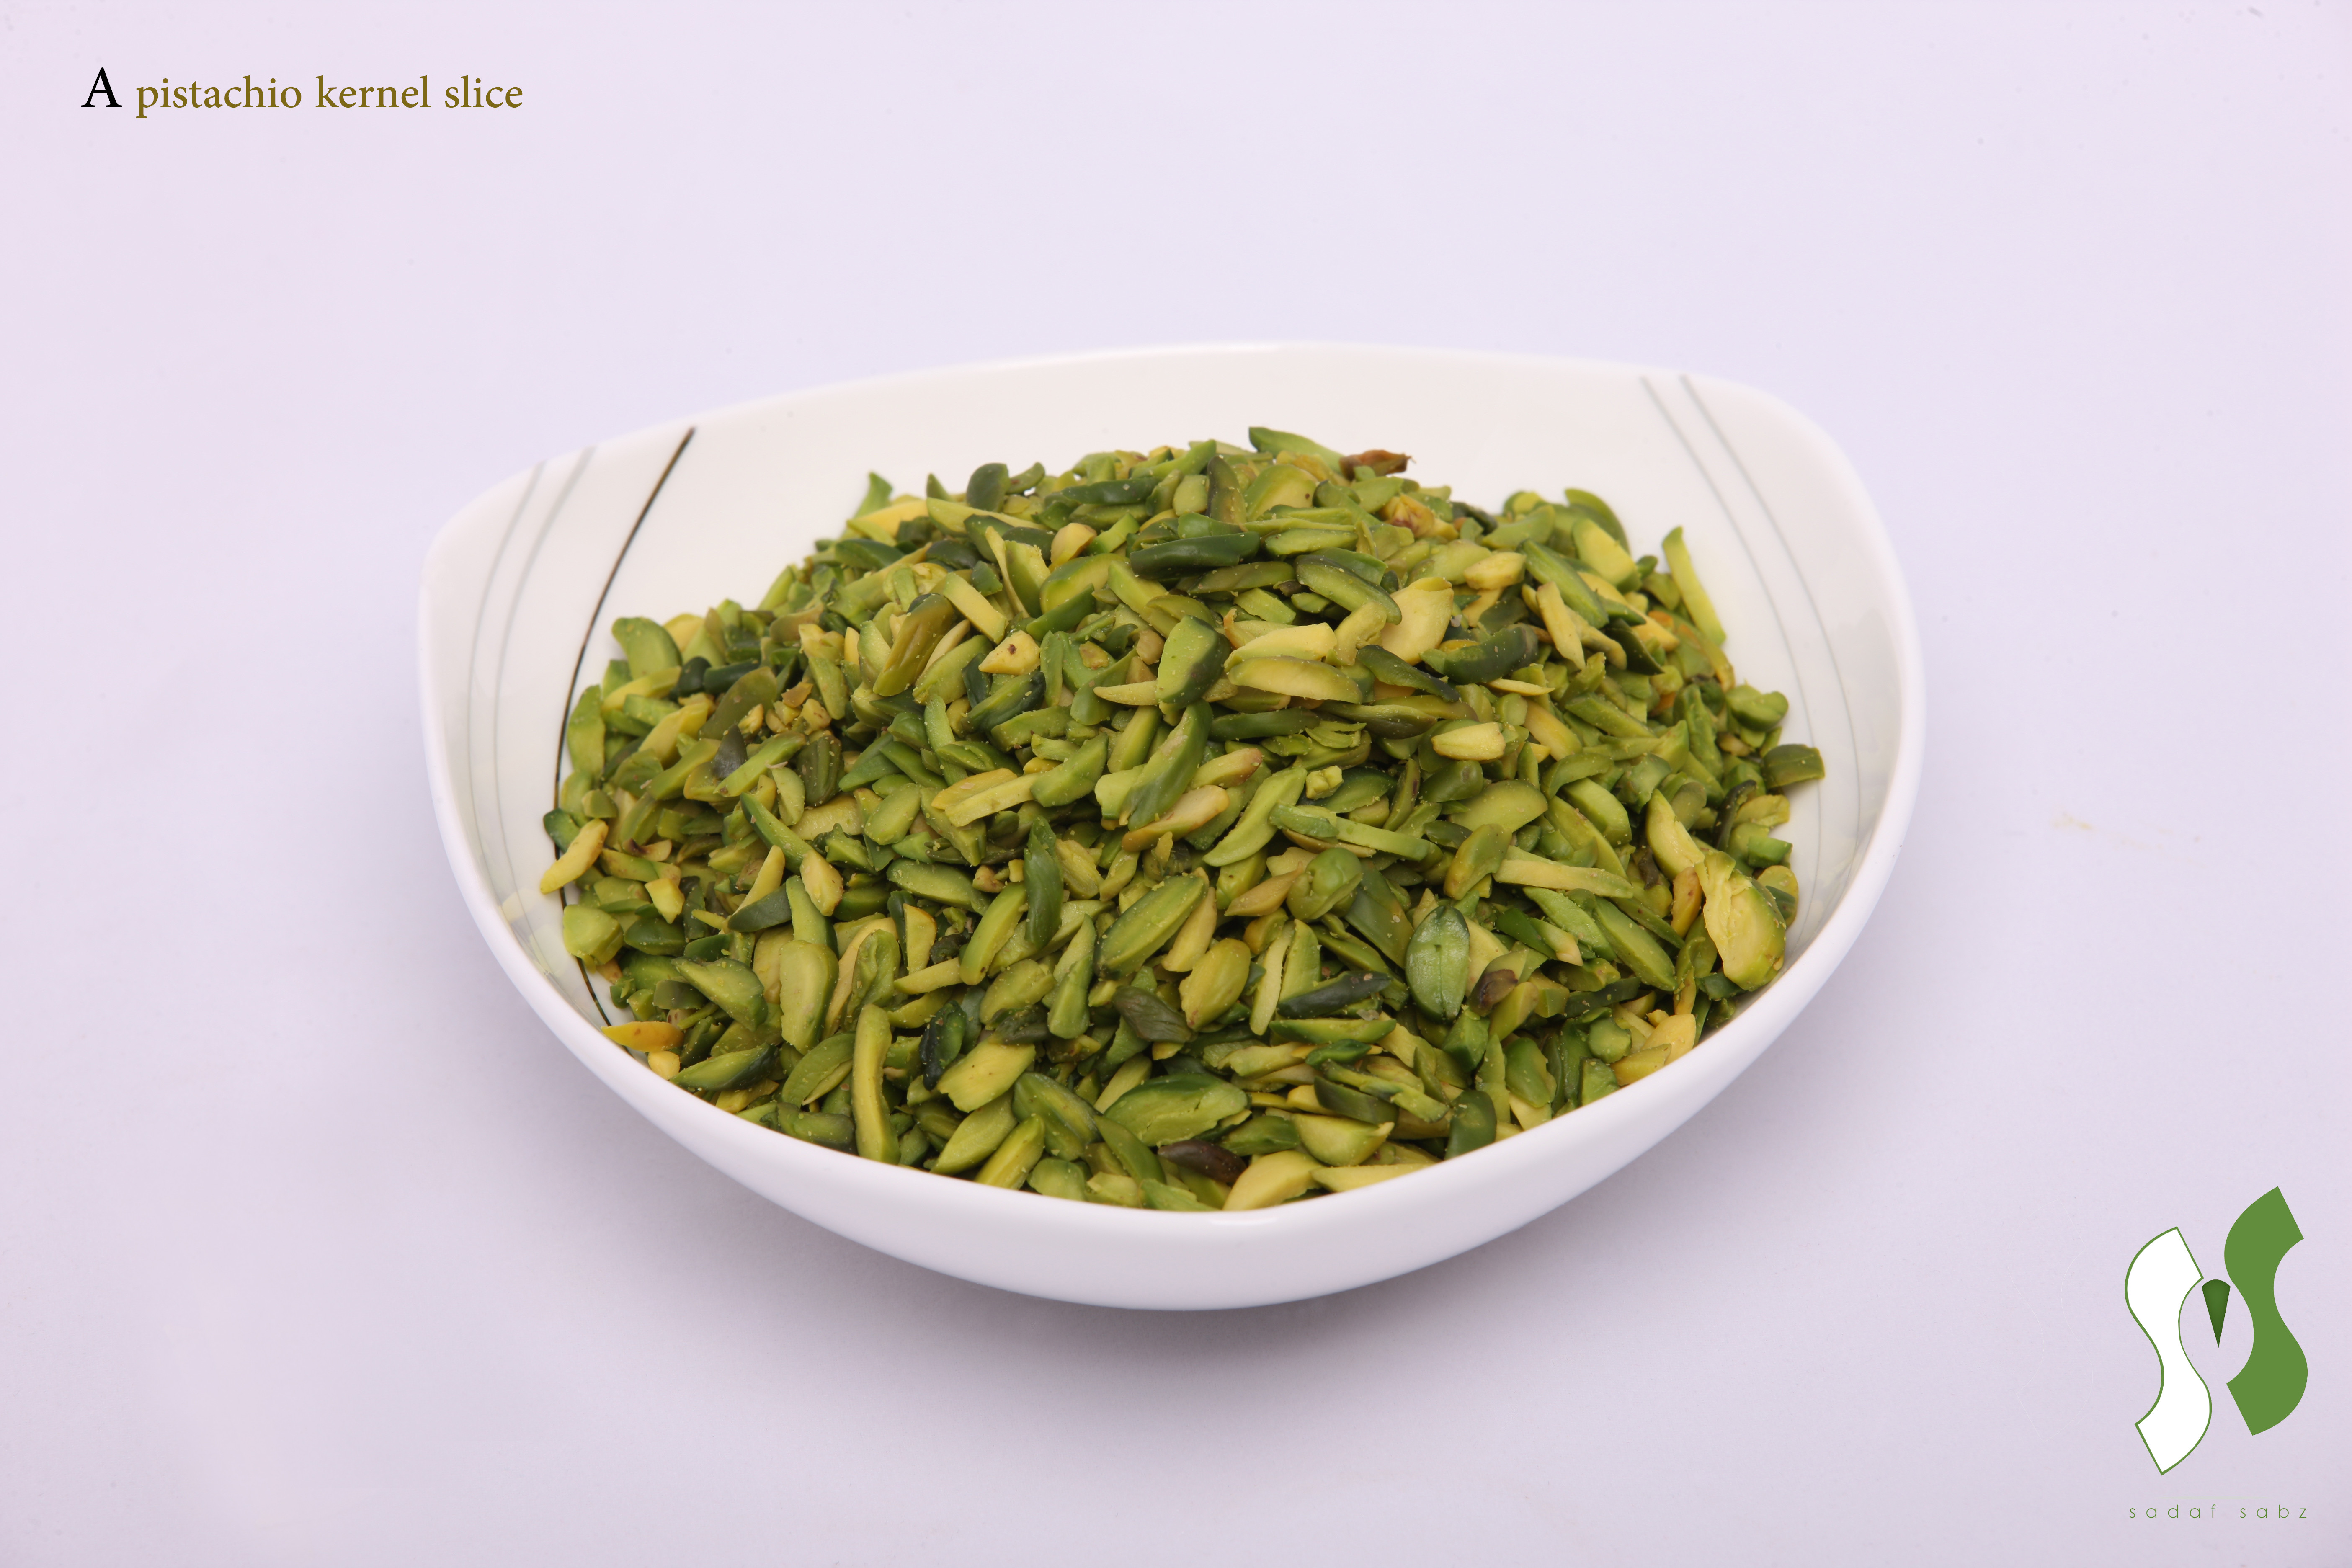 slivered-pistachio-kernel-grade-b